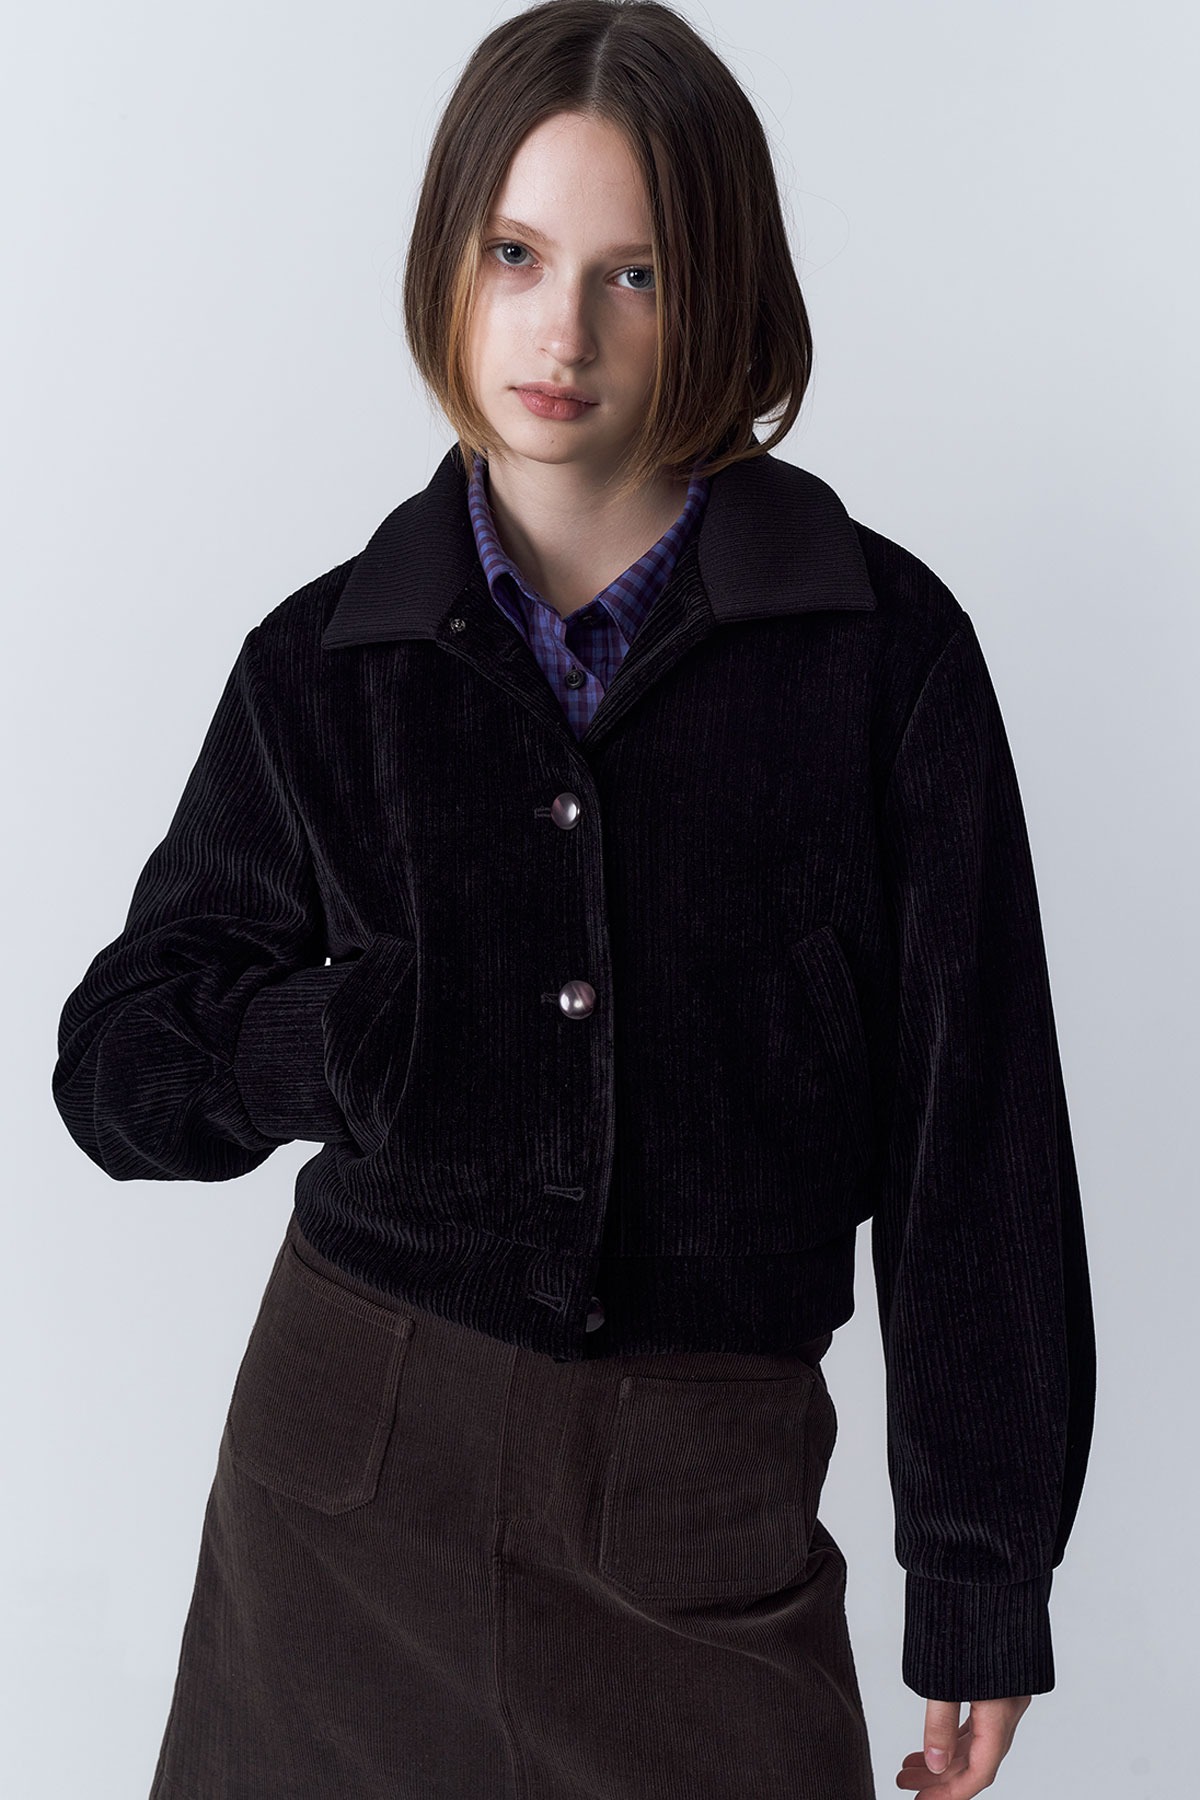 Knit collar velvet volume jumper(black)